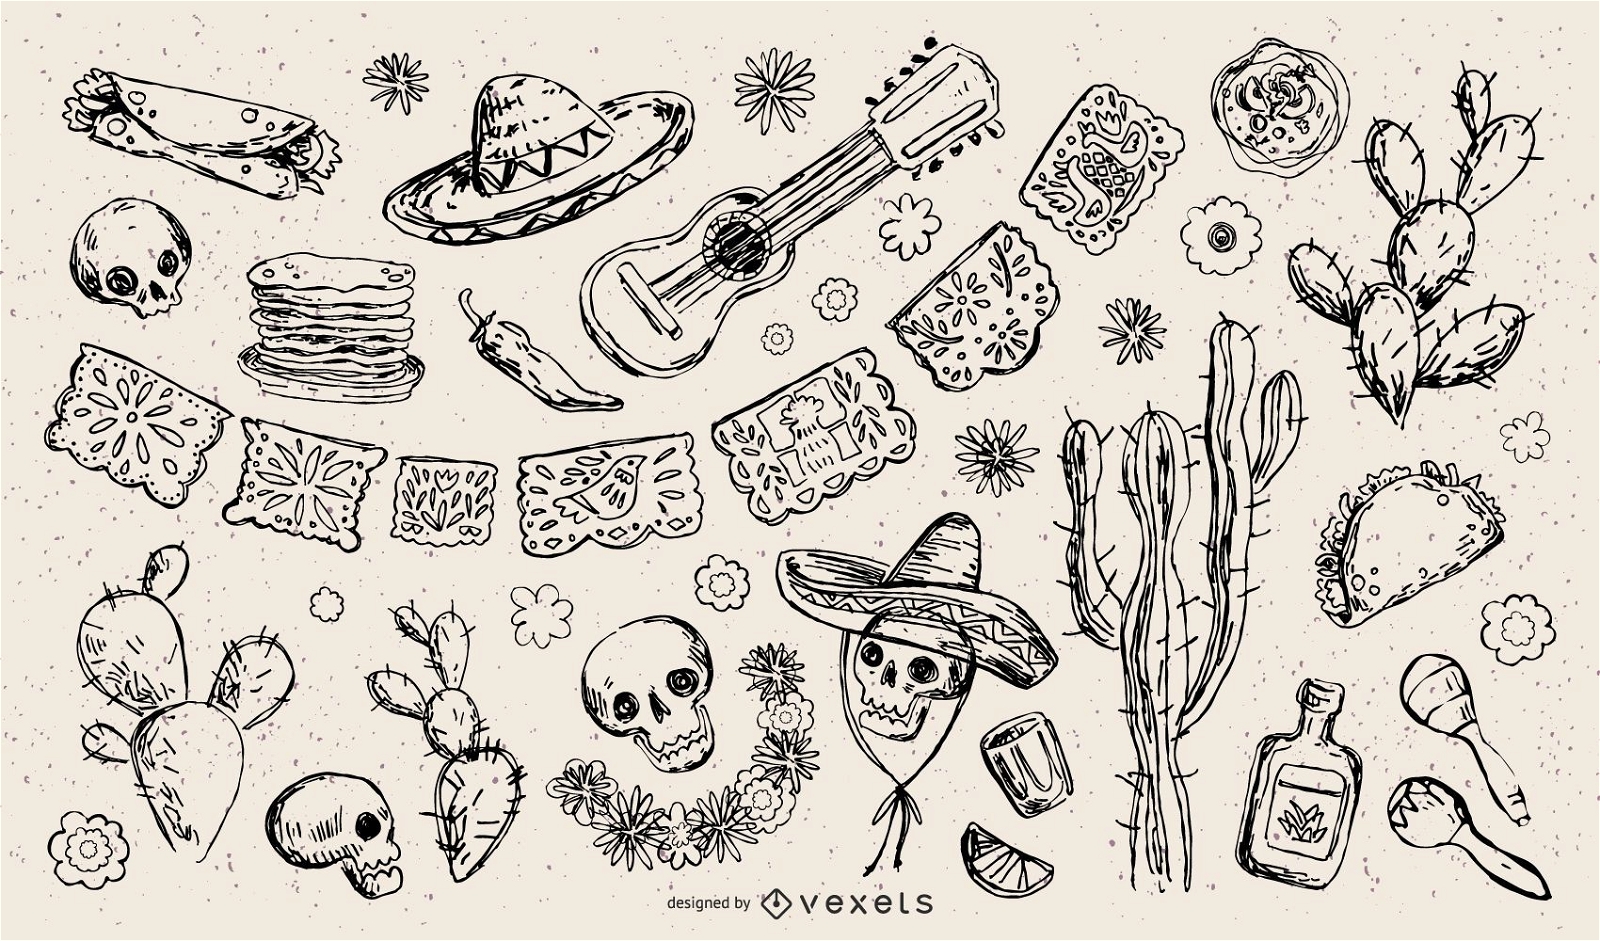 Traditionelle mexikanische Element-Strich-Illustrations-Sammlung